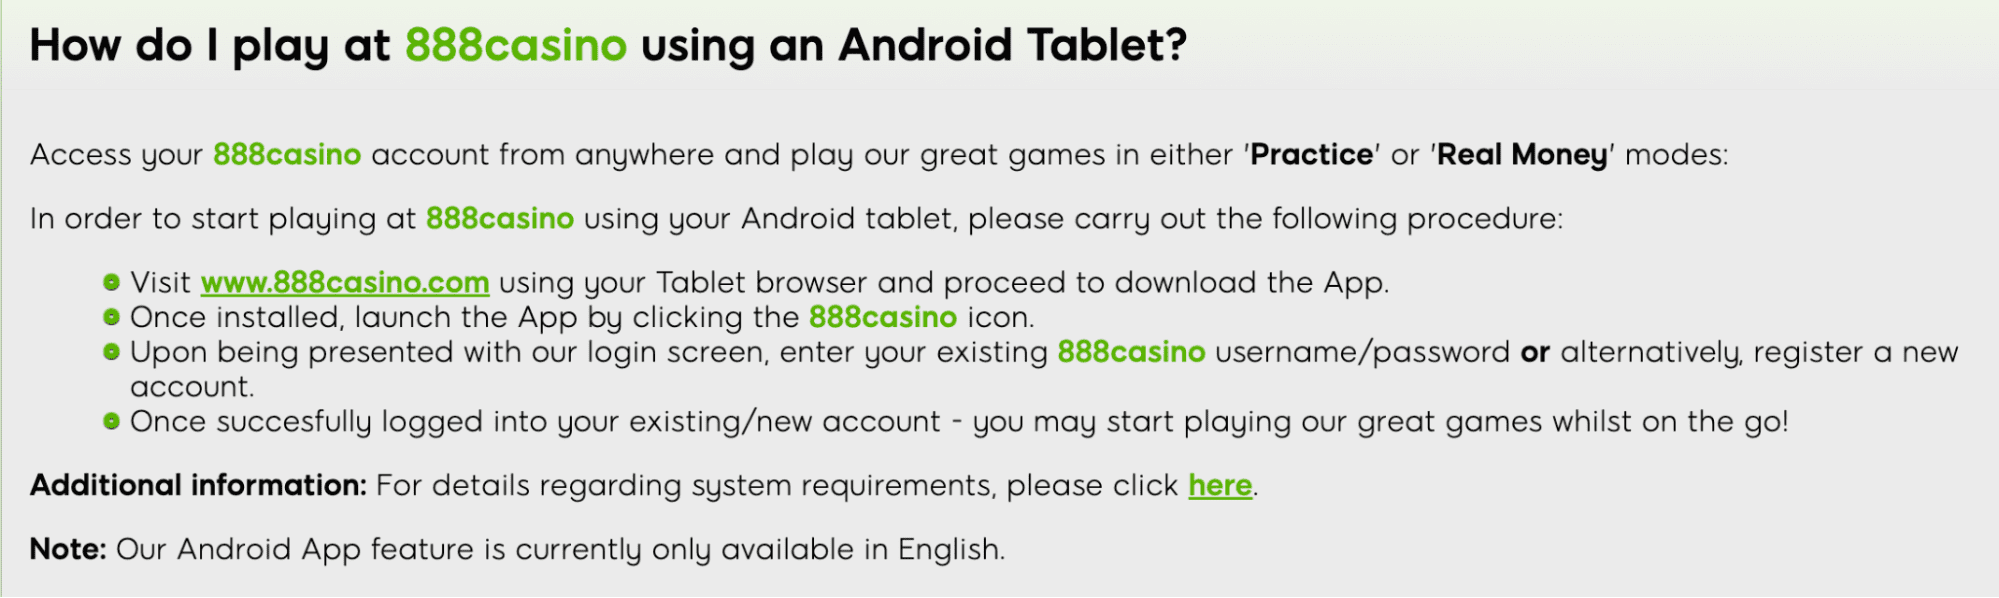 инструкция по установке Андроид приложения казино 888